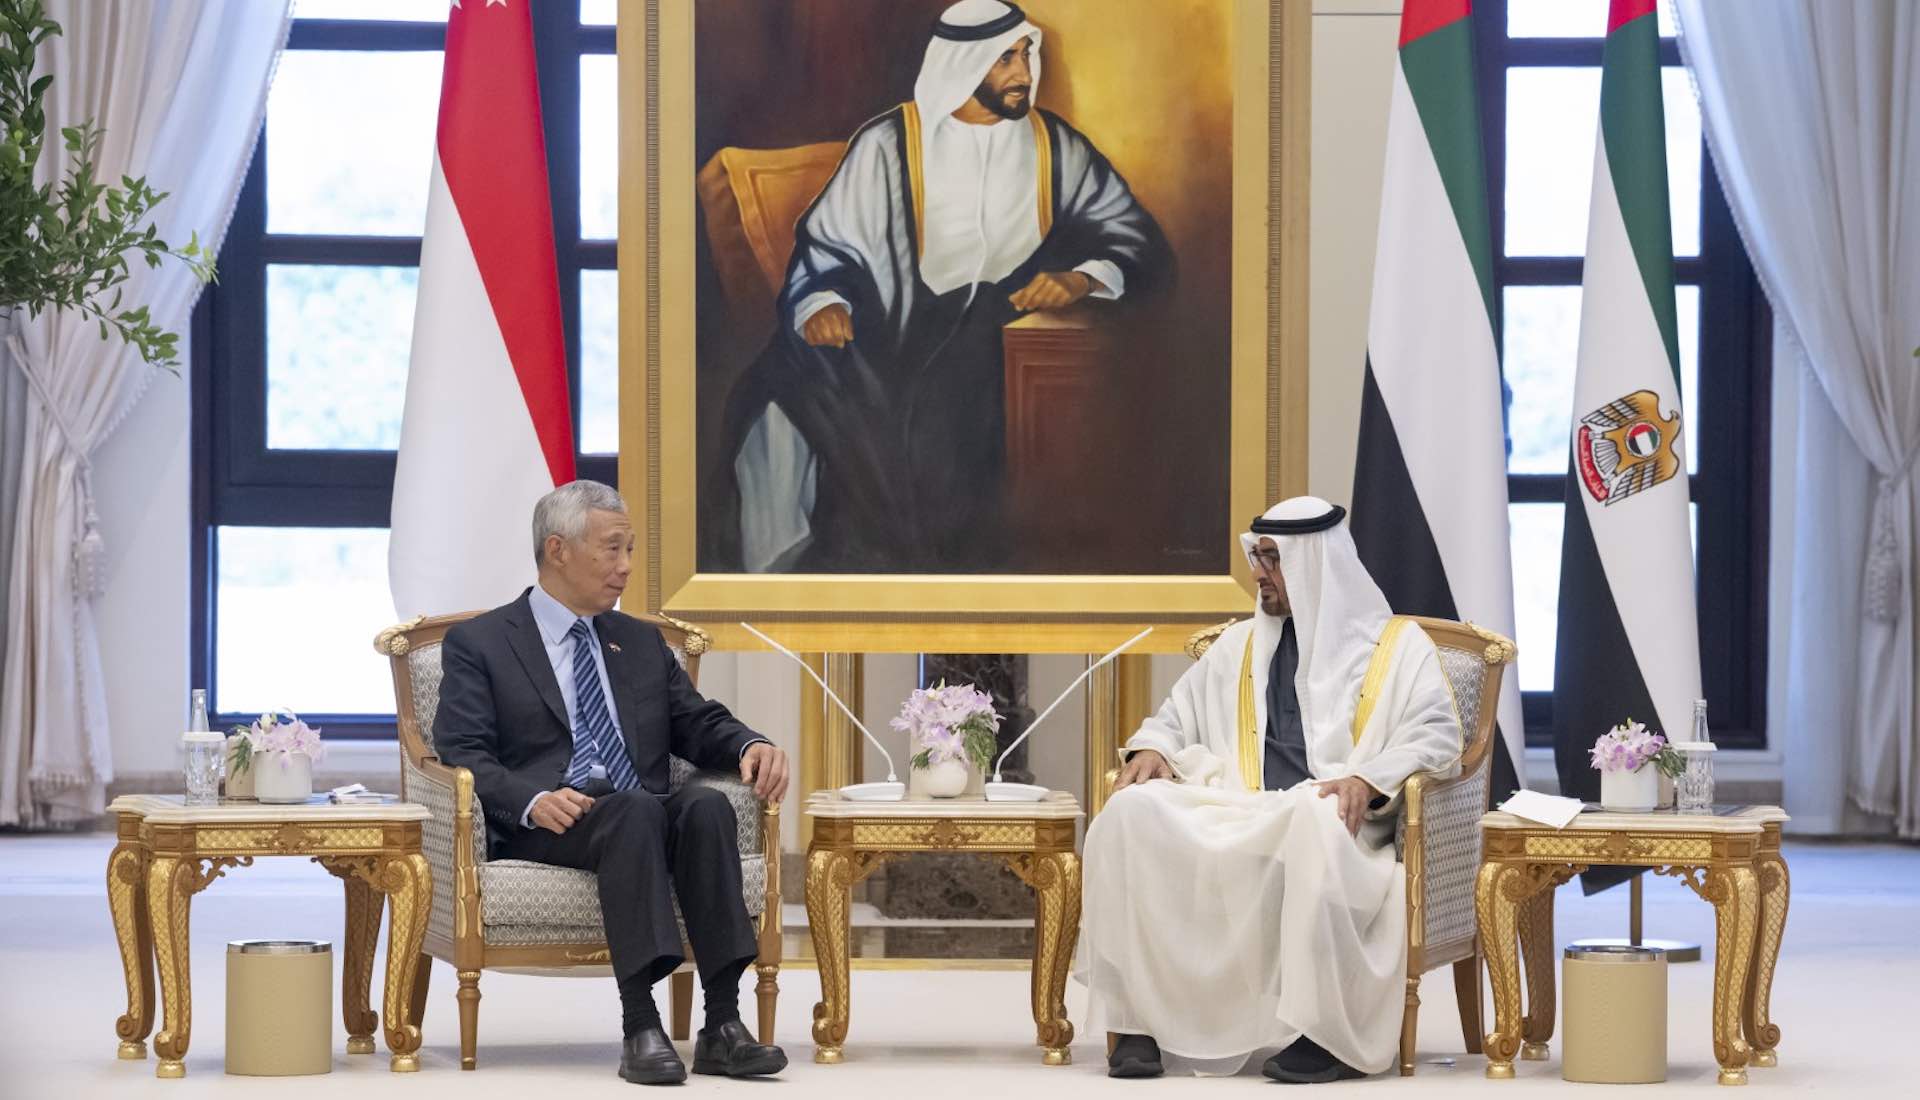 اہم سفارتی اجلاس میں متحدہ عرب امارات اور سنگاپور کے تعلقات مضبوط